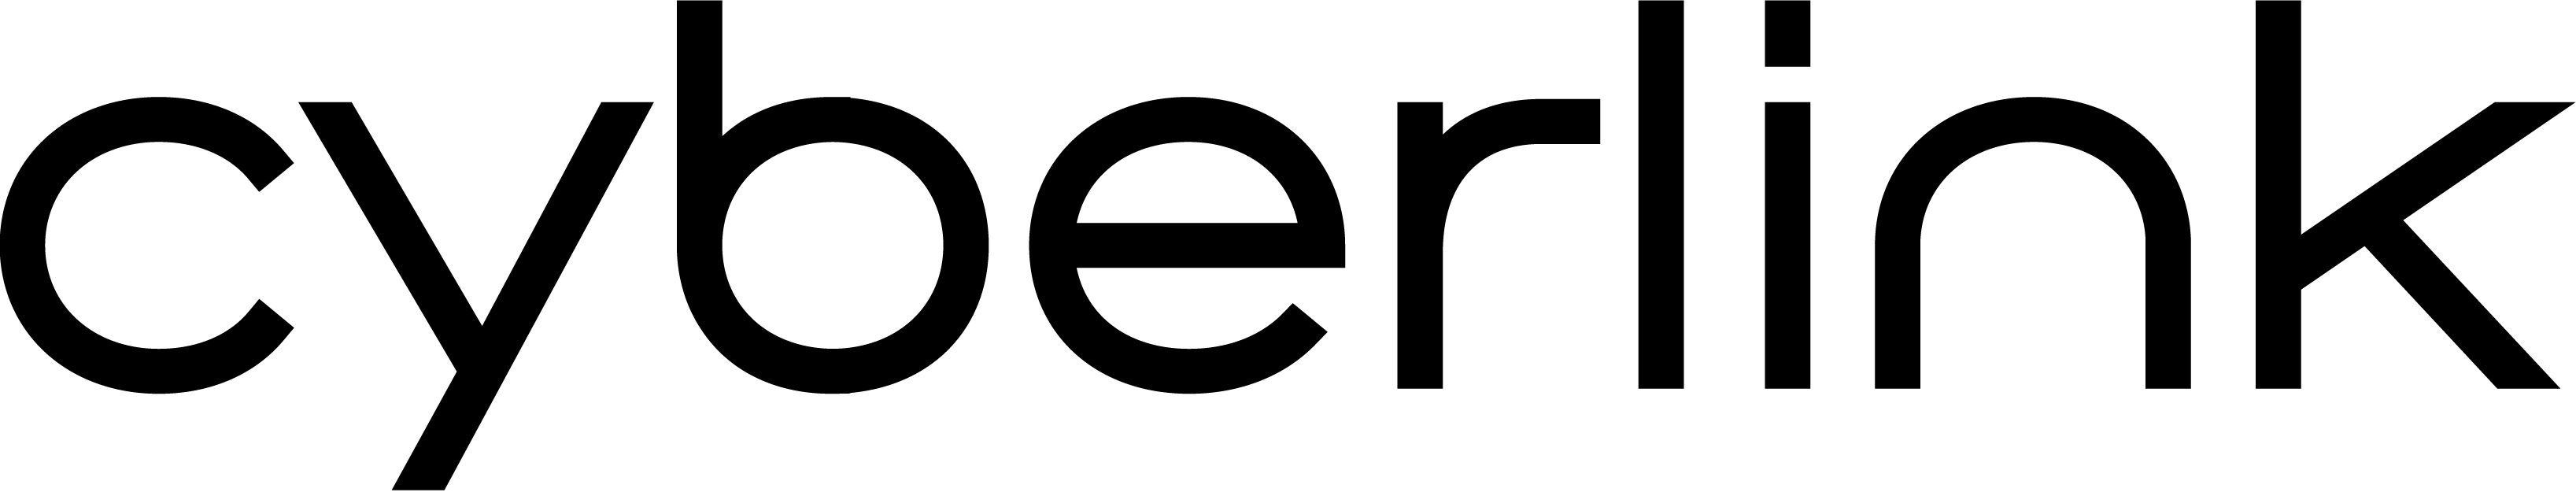 Cyberlink-final-logo